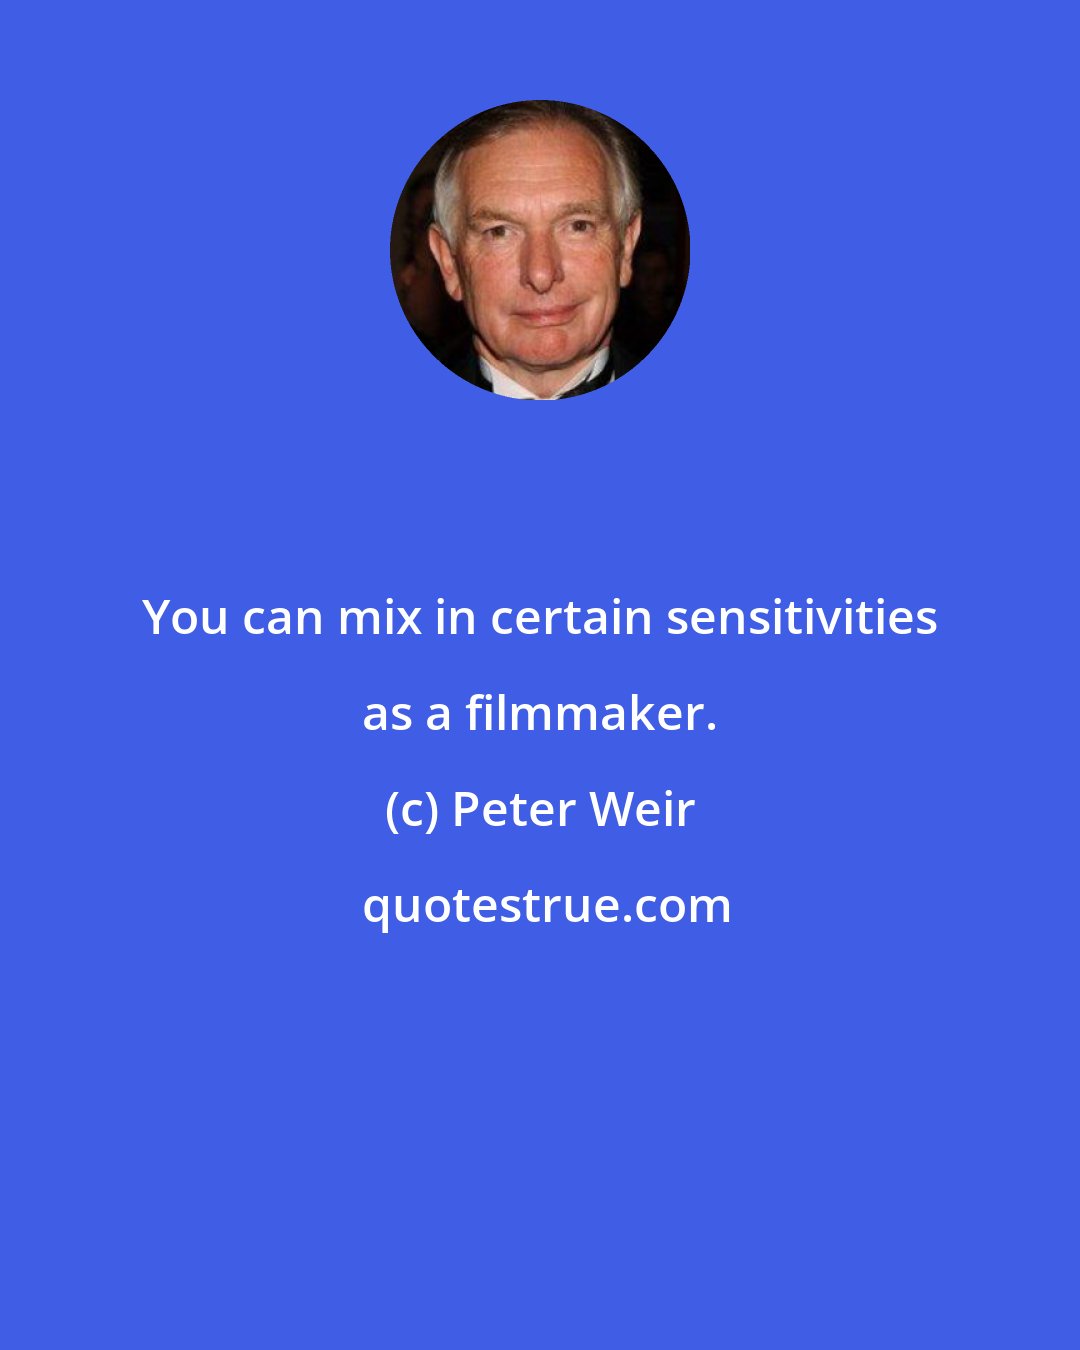 Peter Weir: You can mix in certain sensitivities as a filmmaker.